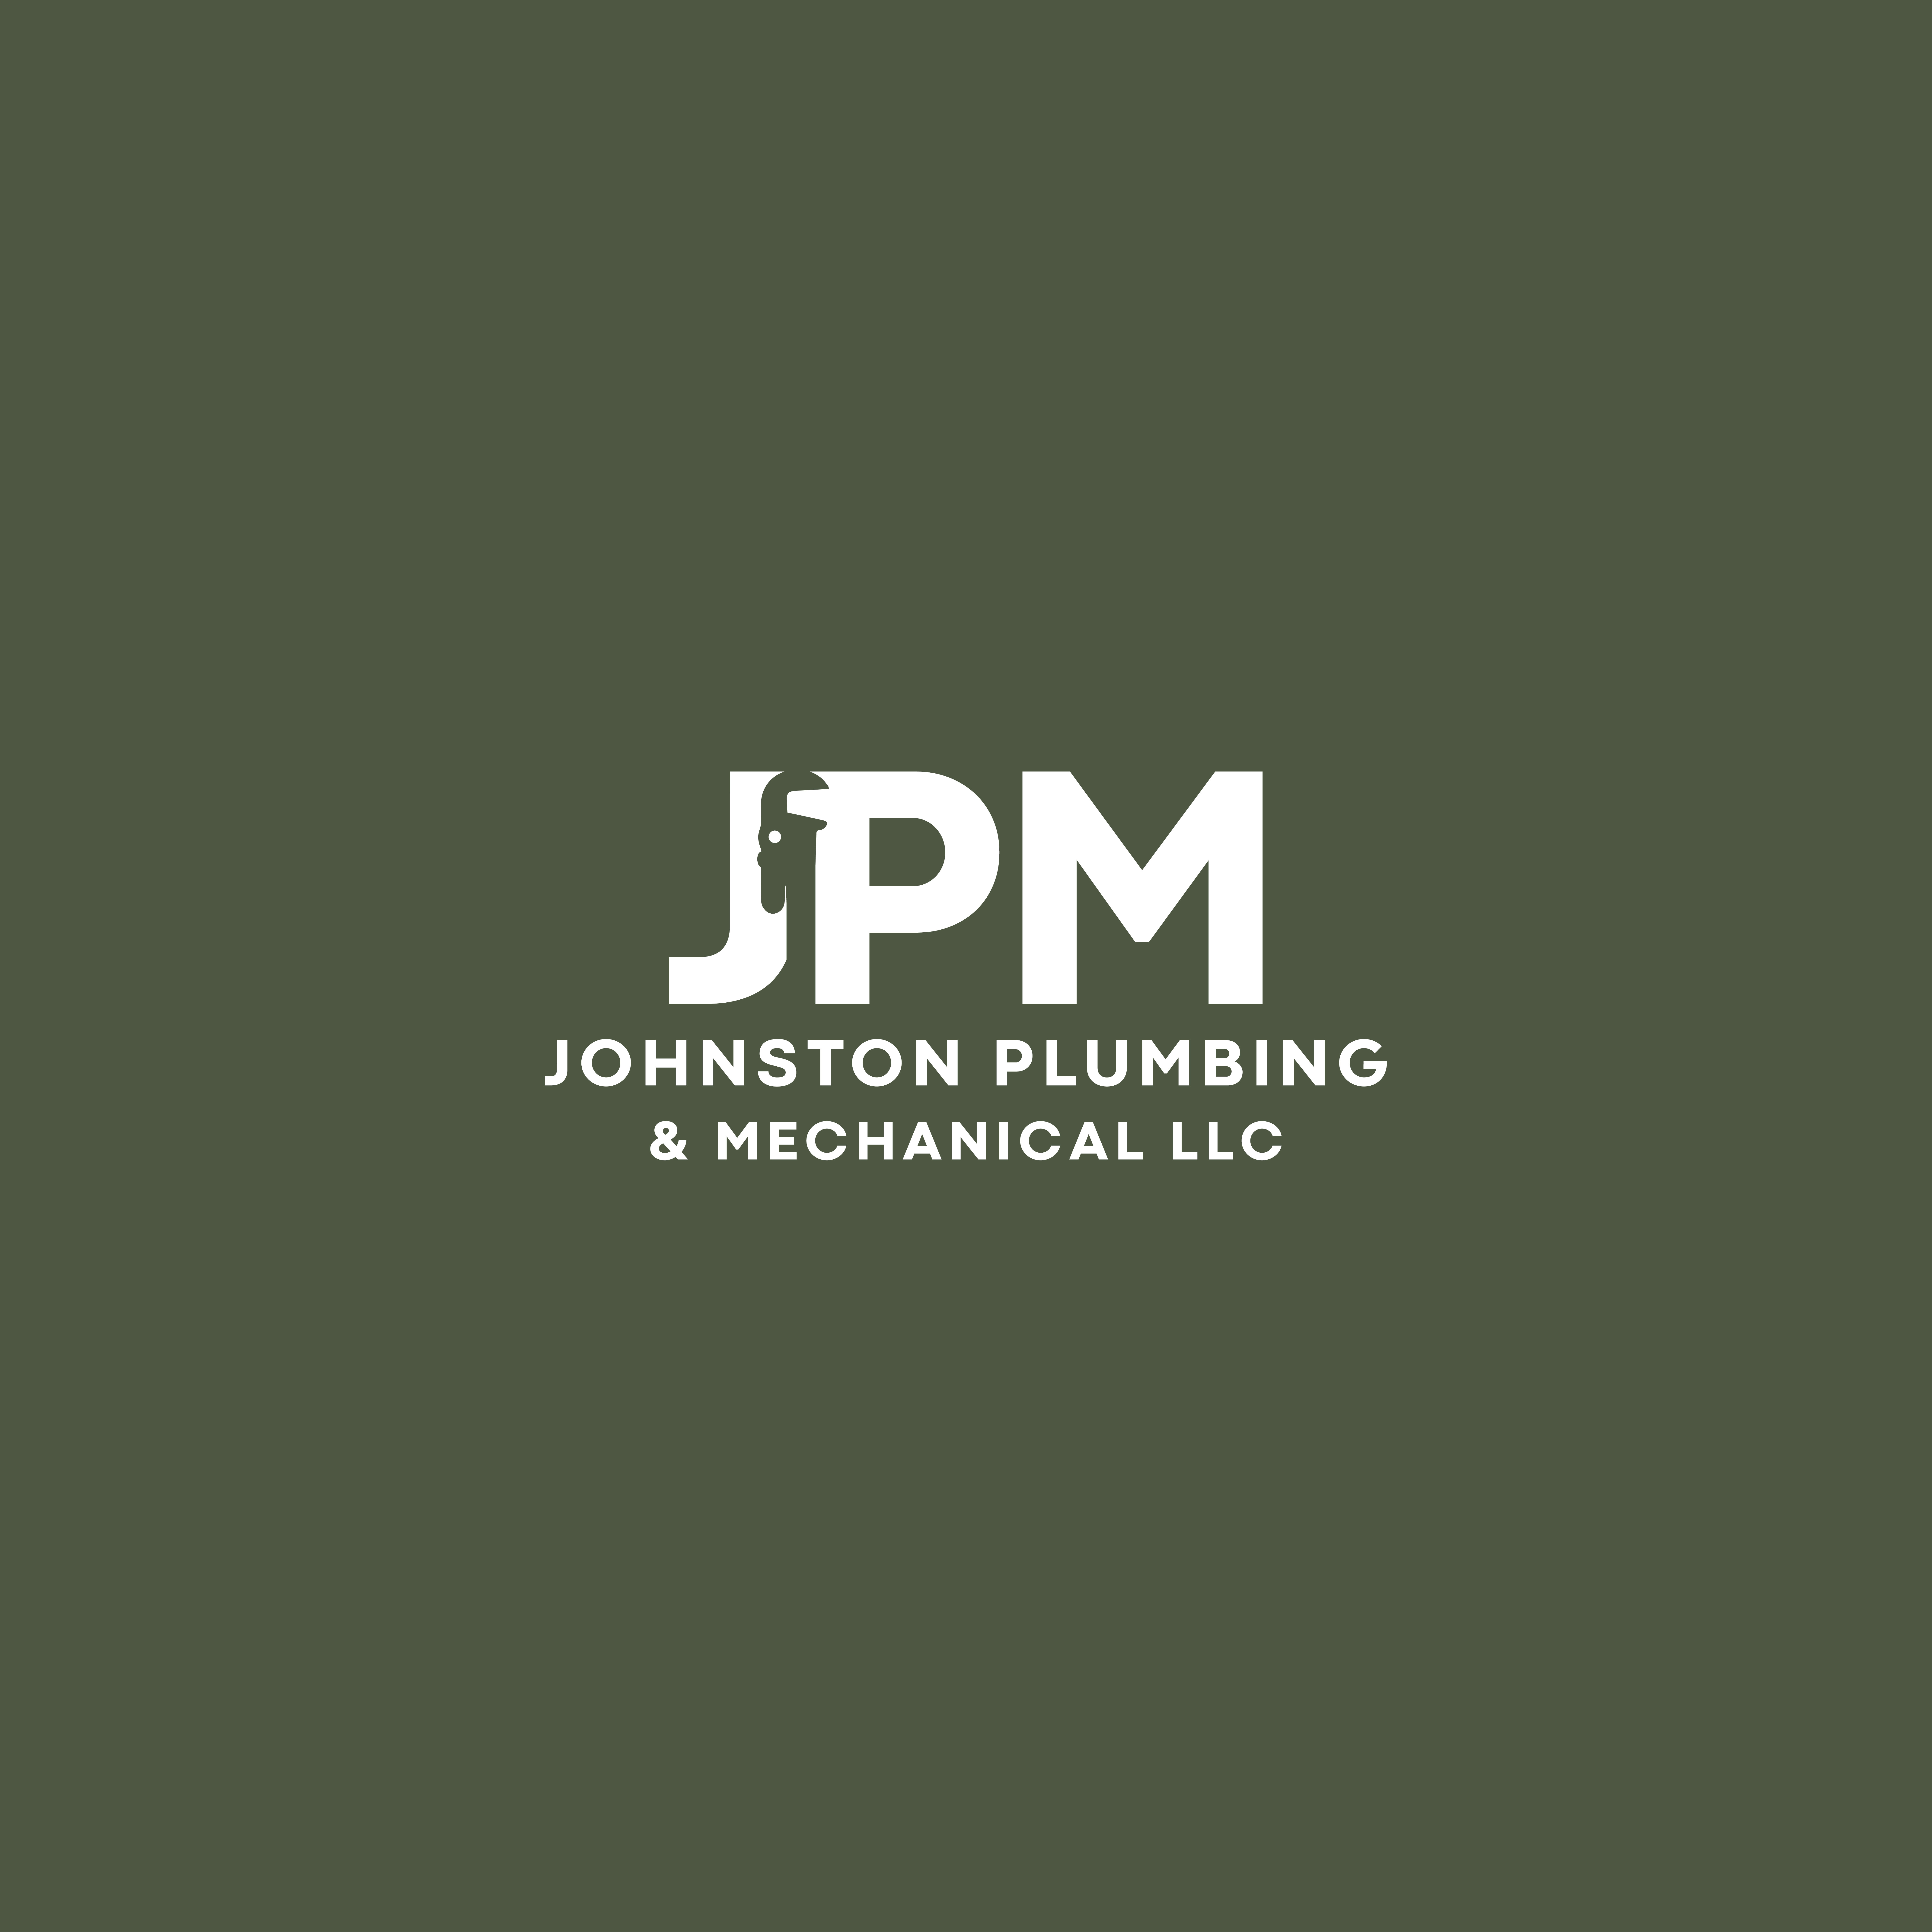 Johnston Plumbing & Mechanical